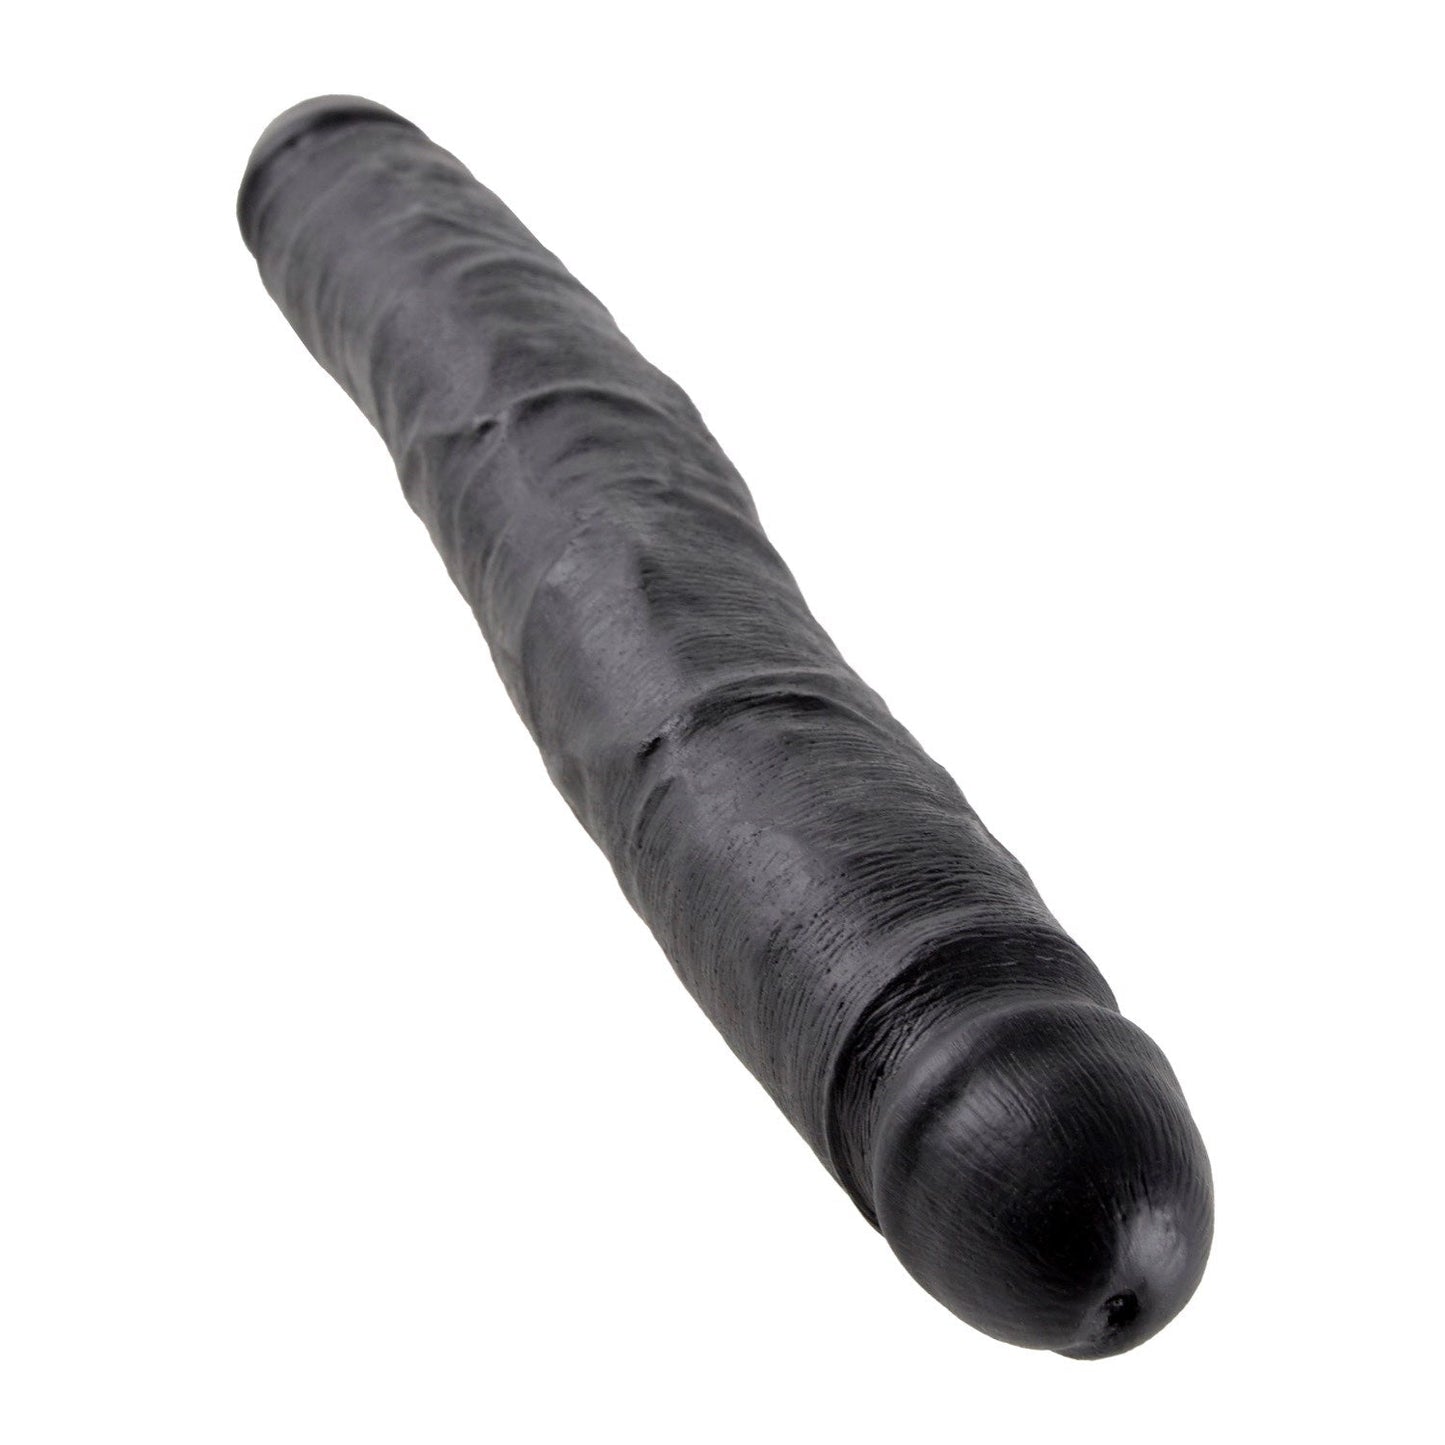 12 英寸超薄双假阳具 - 黑色 30 厘米（12 英寸）双阴茎